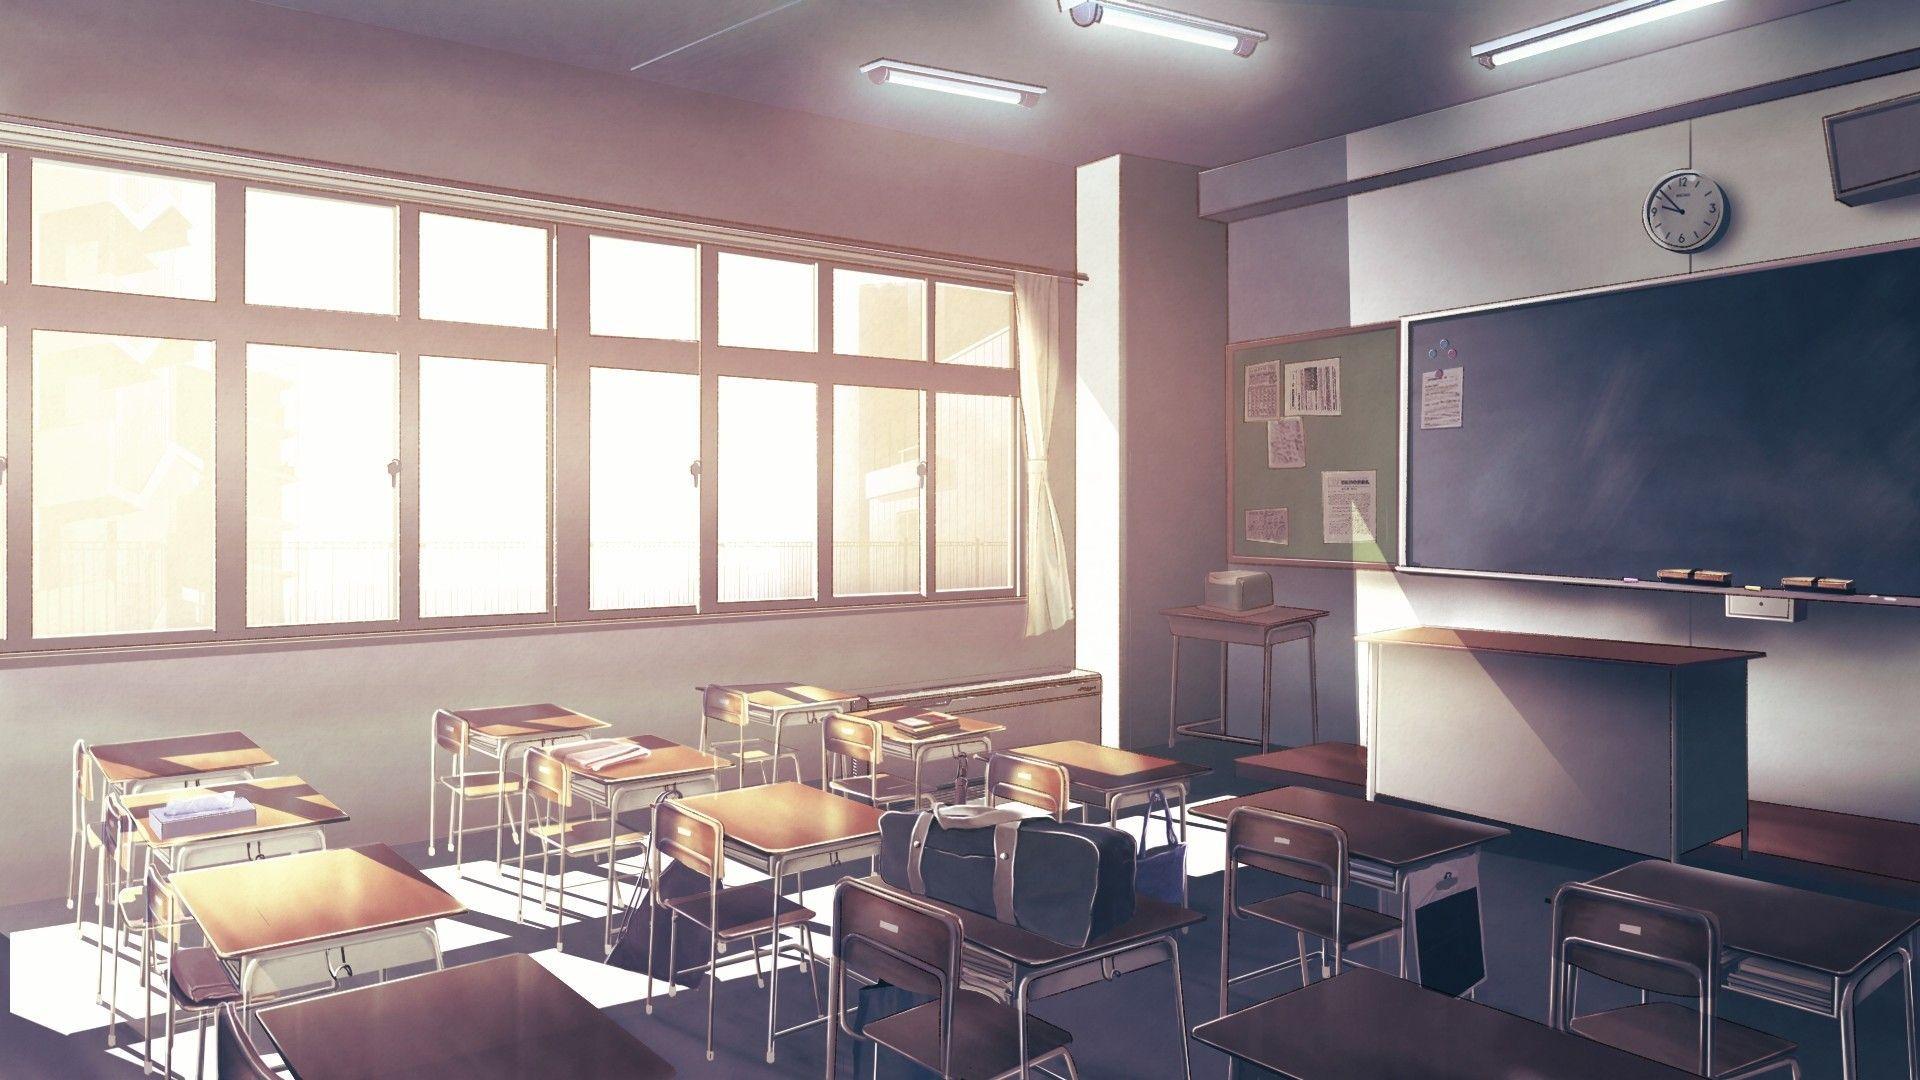 1920x1080 Anime Classroom hình nền